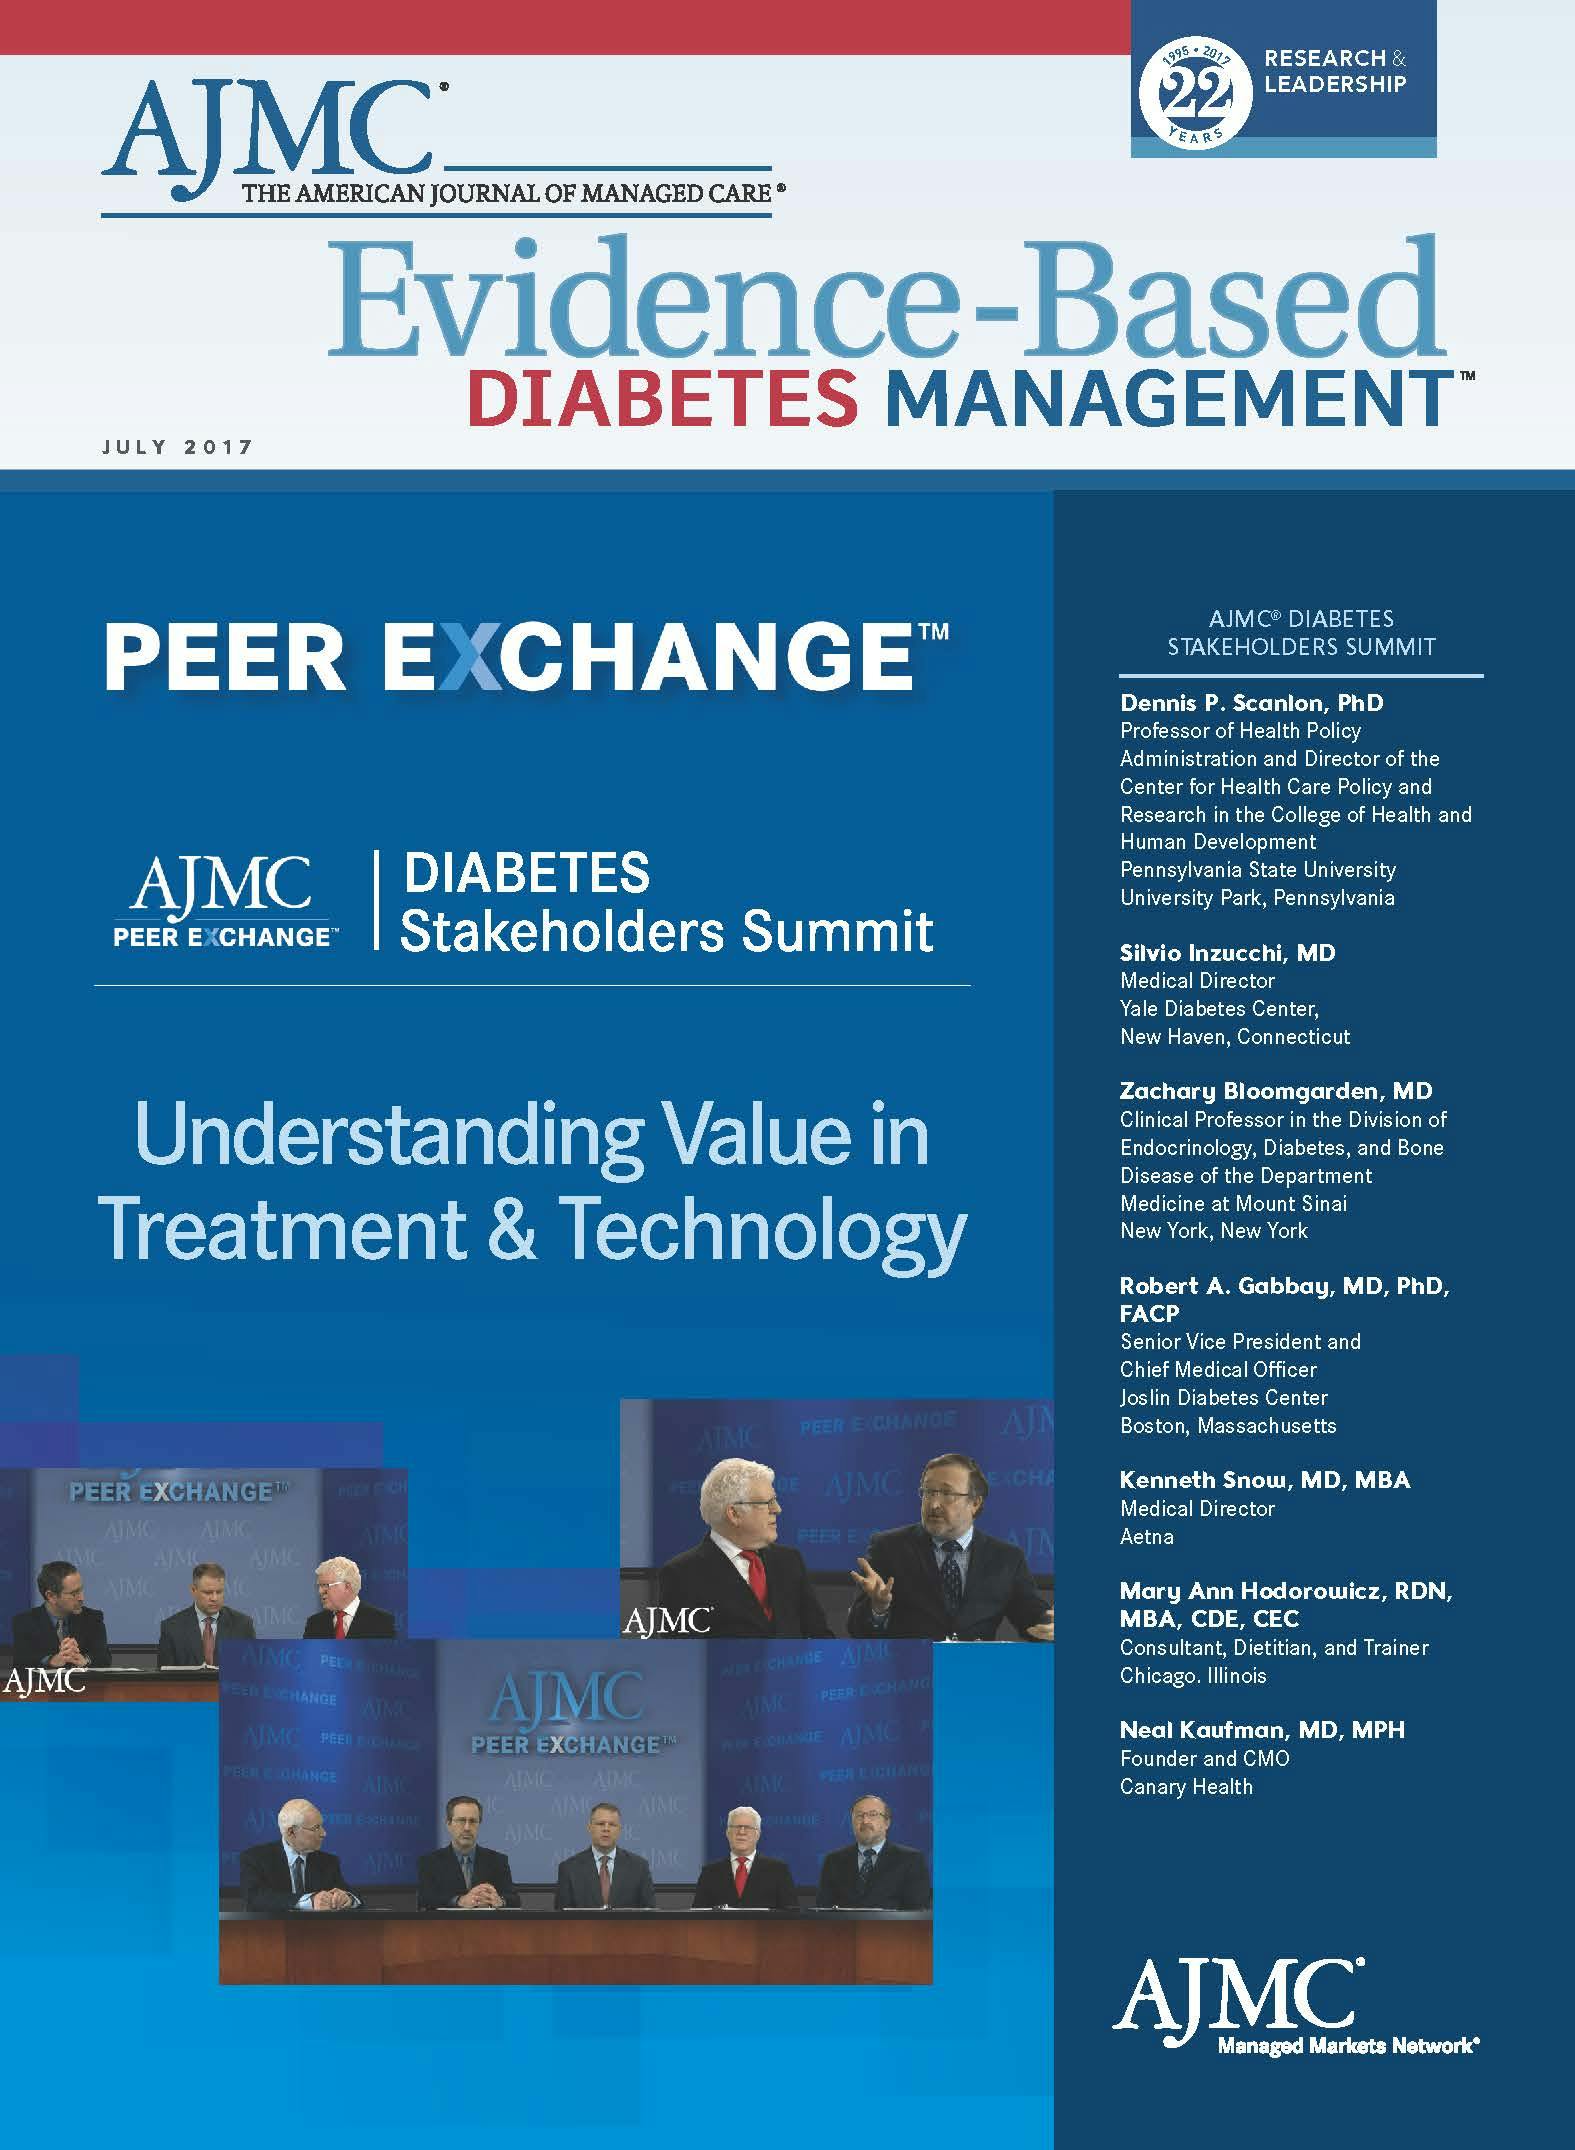 Peer Exchange: Diabetes Stakeholders Summit